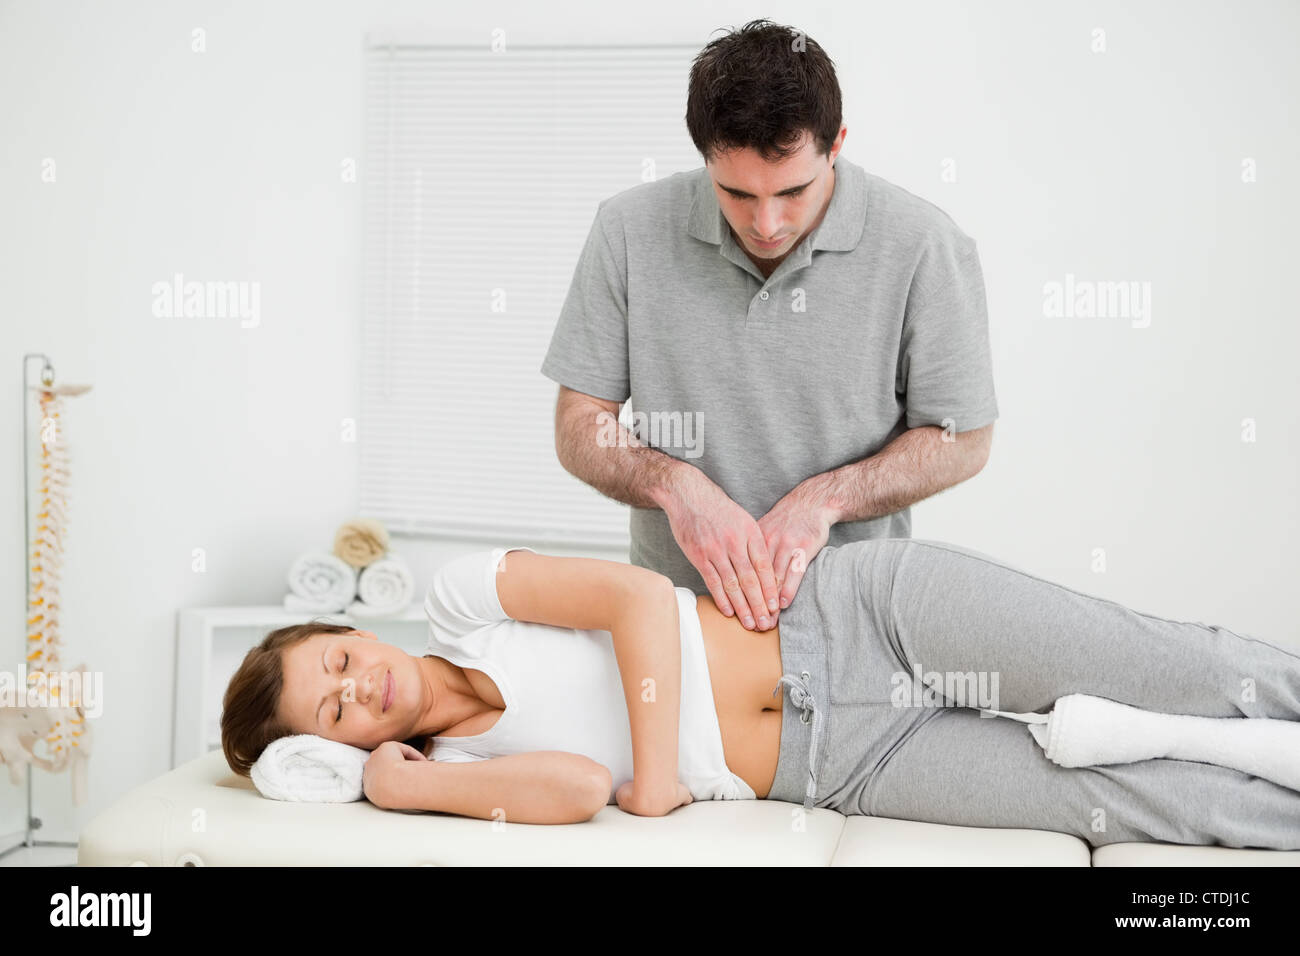 Friedliche Frau massiert auf ihrer Hüfte durch einen Arzt Stockfoto